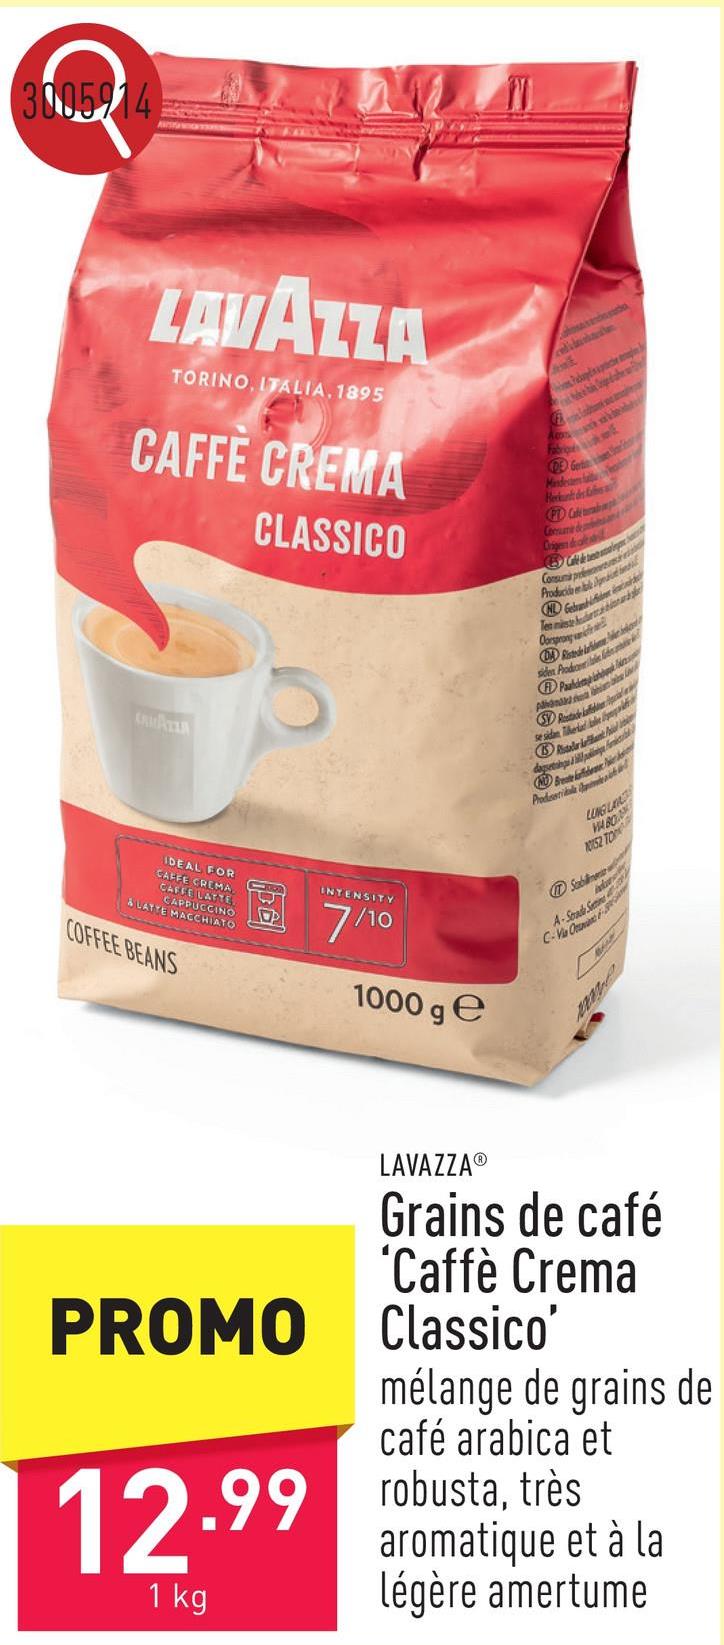 Grains de café 'Caffè Crema Classico' mélange de grains de café arabica et robusta, très aromatique et à la légère amertume